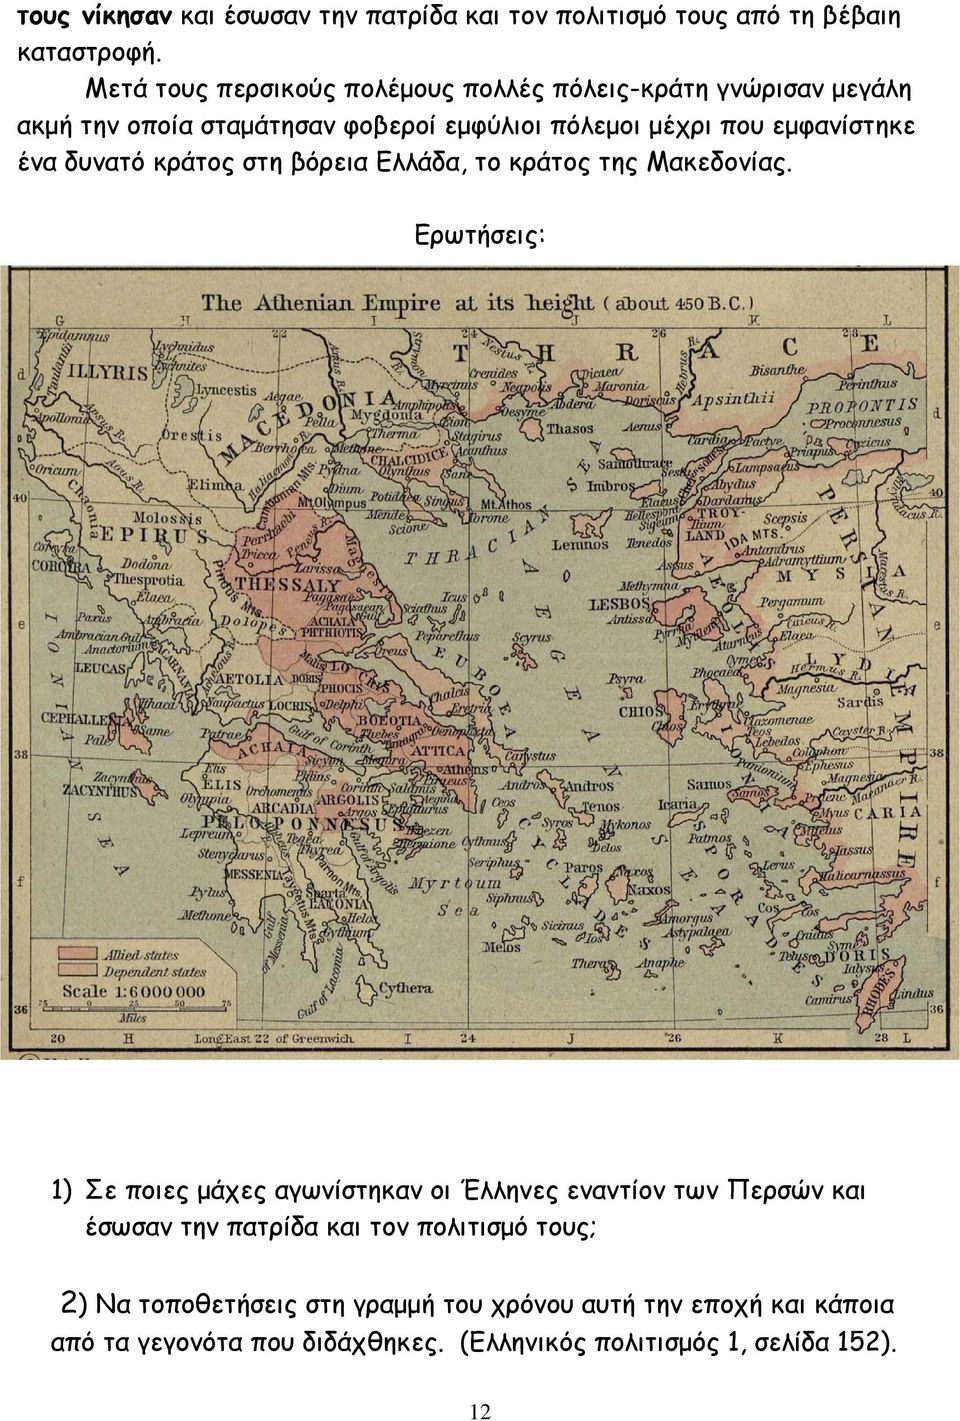 εµφανίστηκε ένα δυνατό κράτος στη βόρεια Ελλάδα, το κράτος της Μακεδονίας.